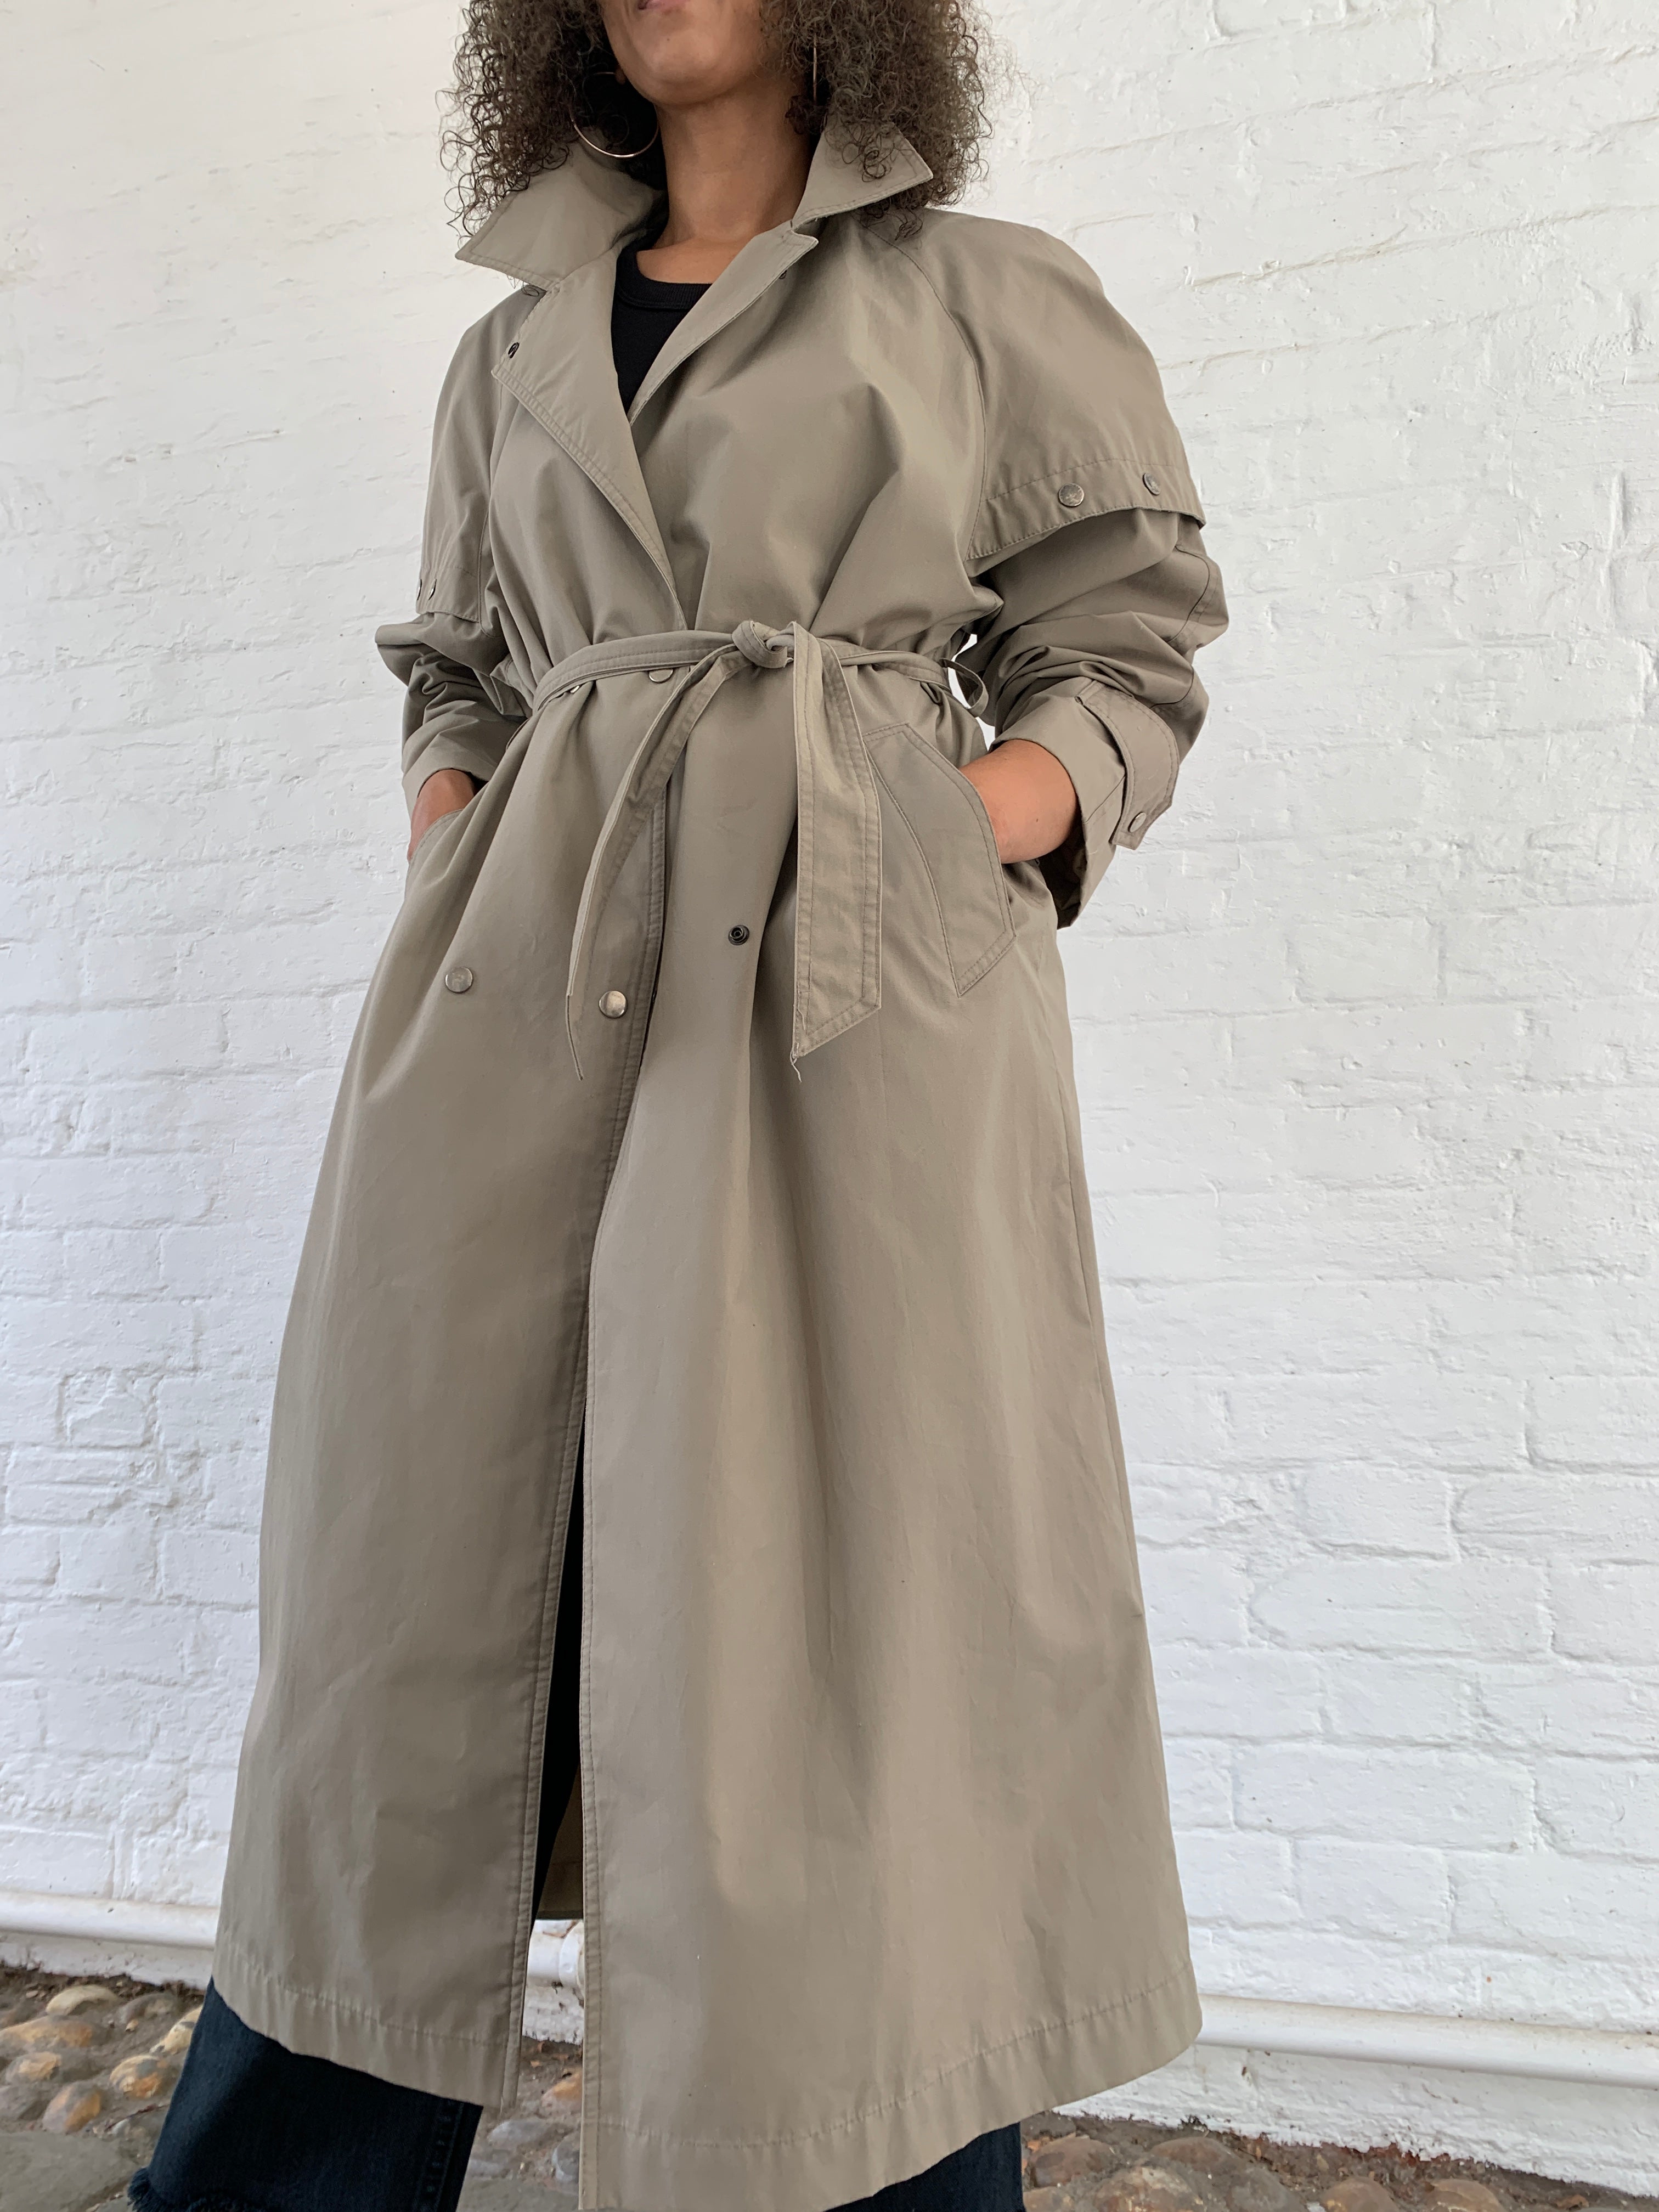 Vintage 1980s Nicollini trench coat